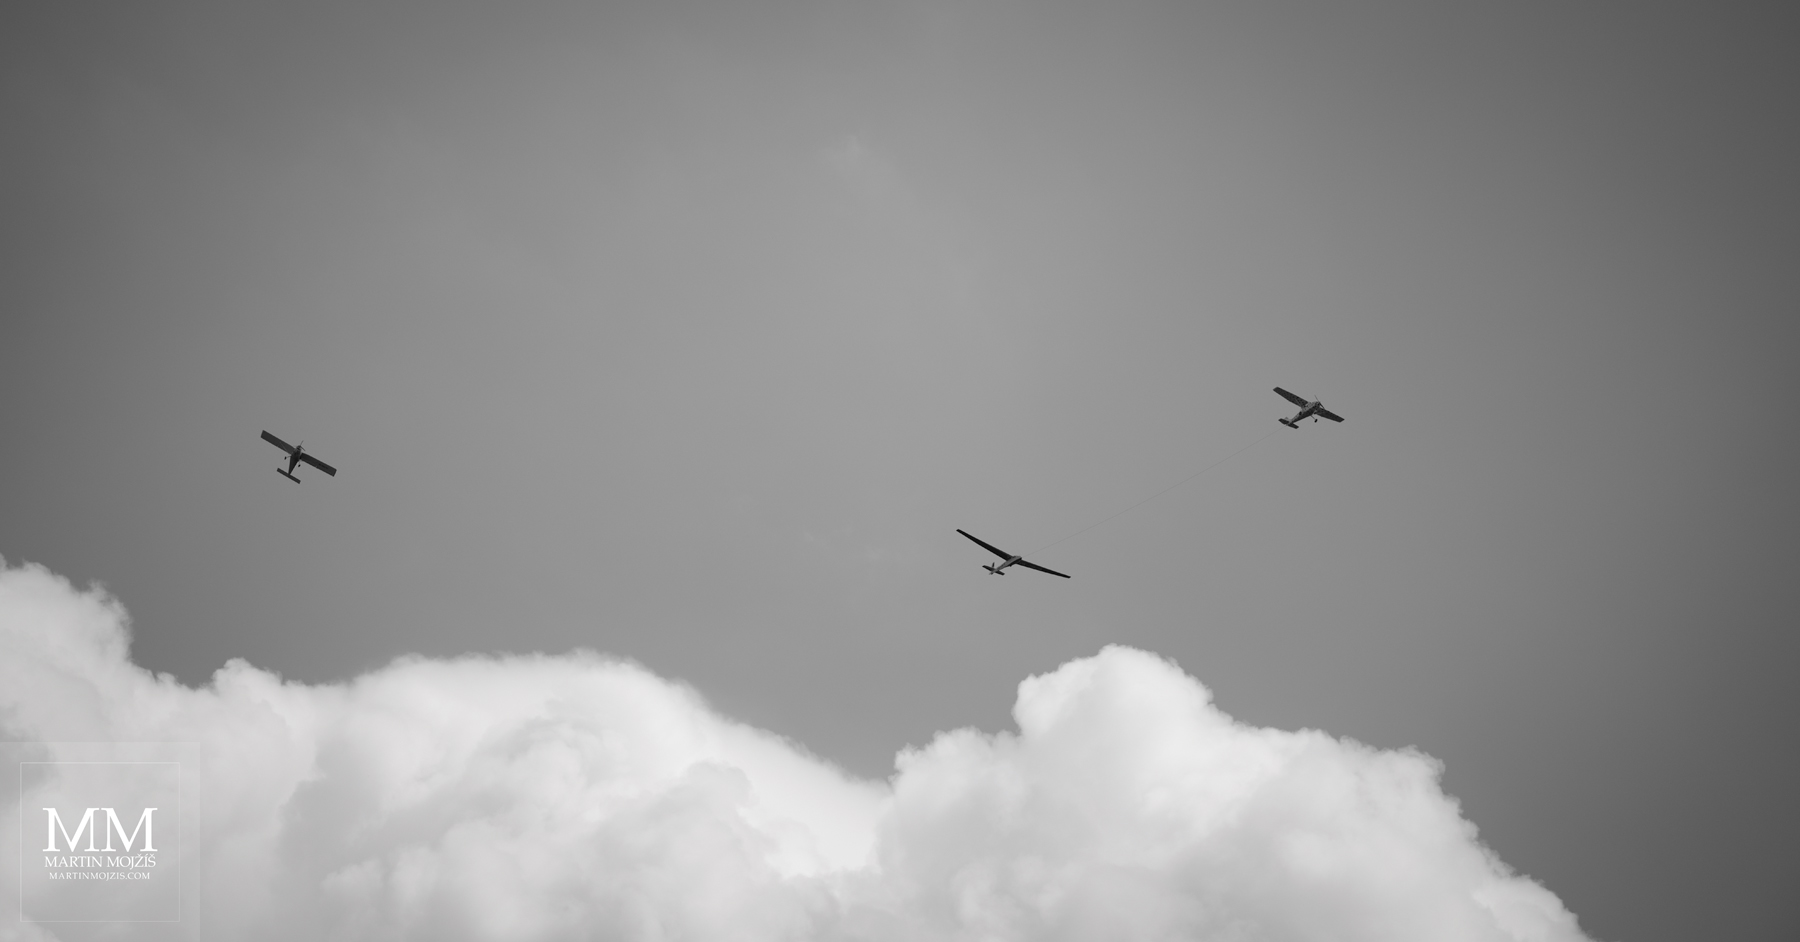 Tři letící letadla, bílý mrak. Umělecká černobílá fotografie s názvem NA POČÁTKU LÉTA II. Fotograf Martin Mojžíš.